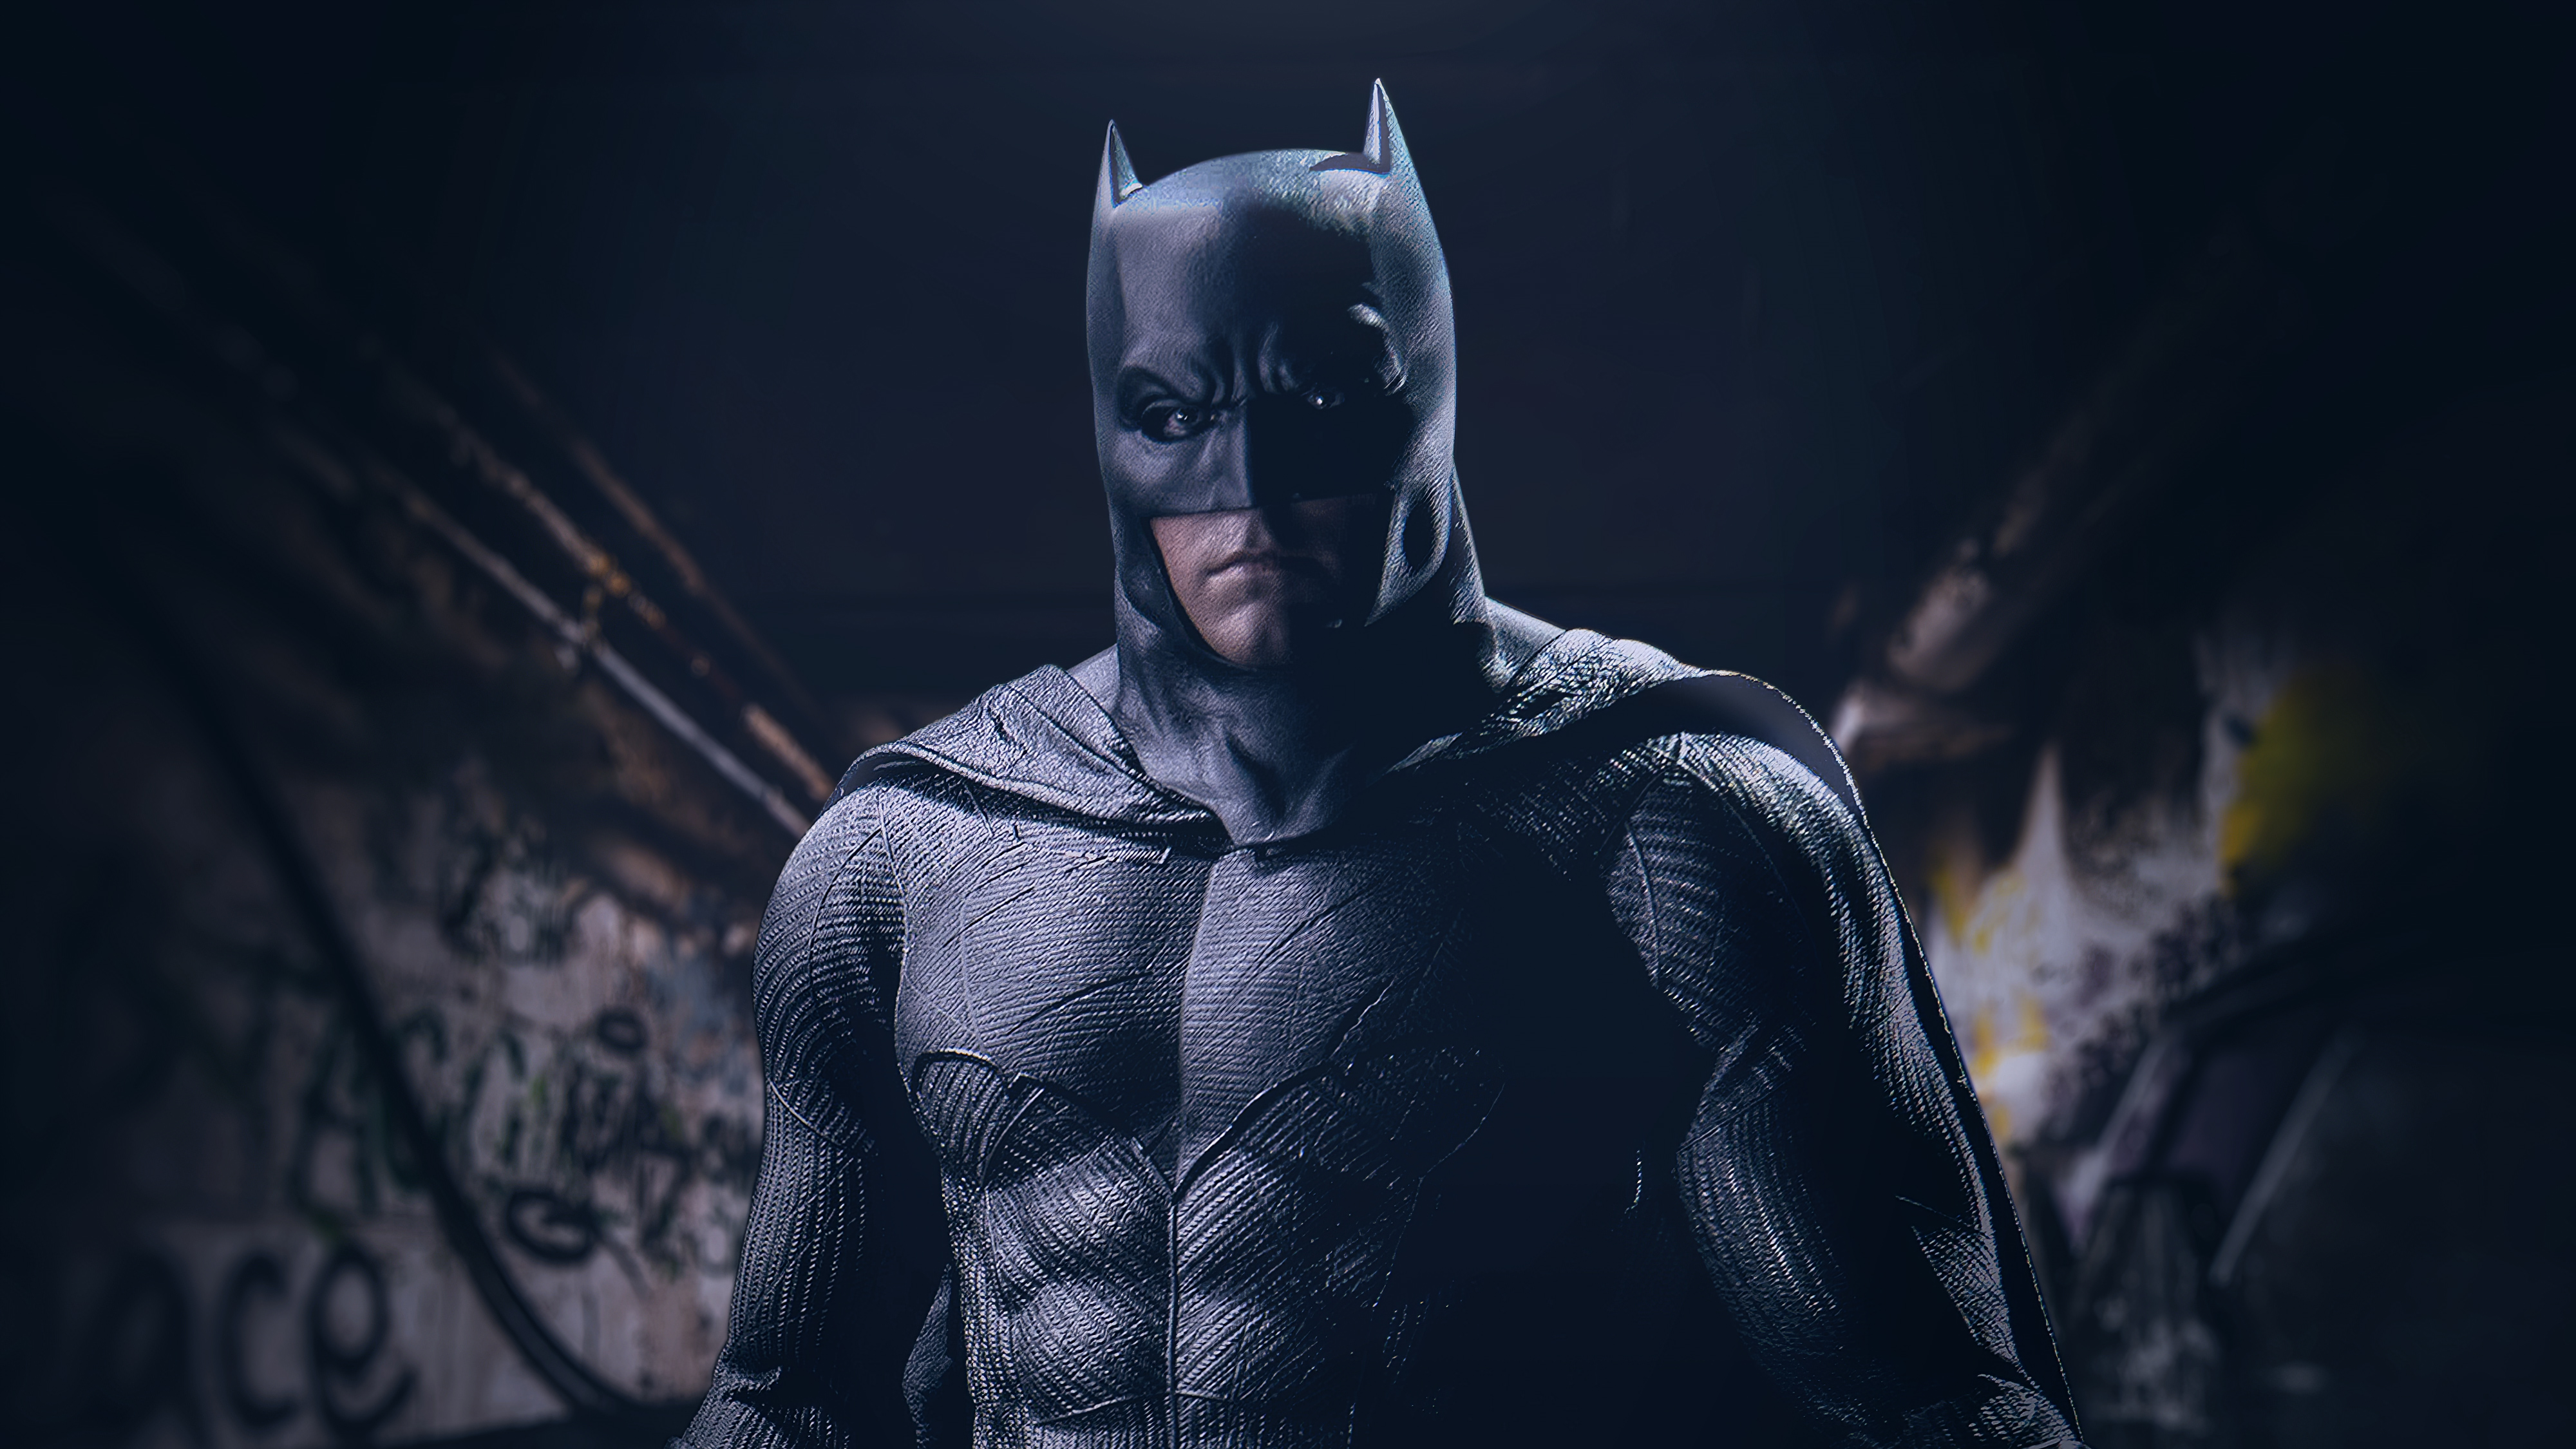 Dark Knight Batman Superhero Art the batman iphone HD phone wallpaper   Pxfuel